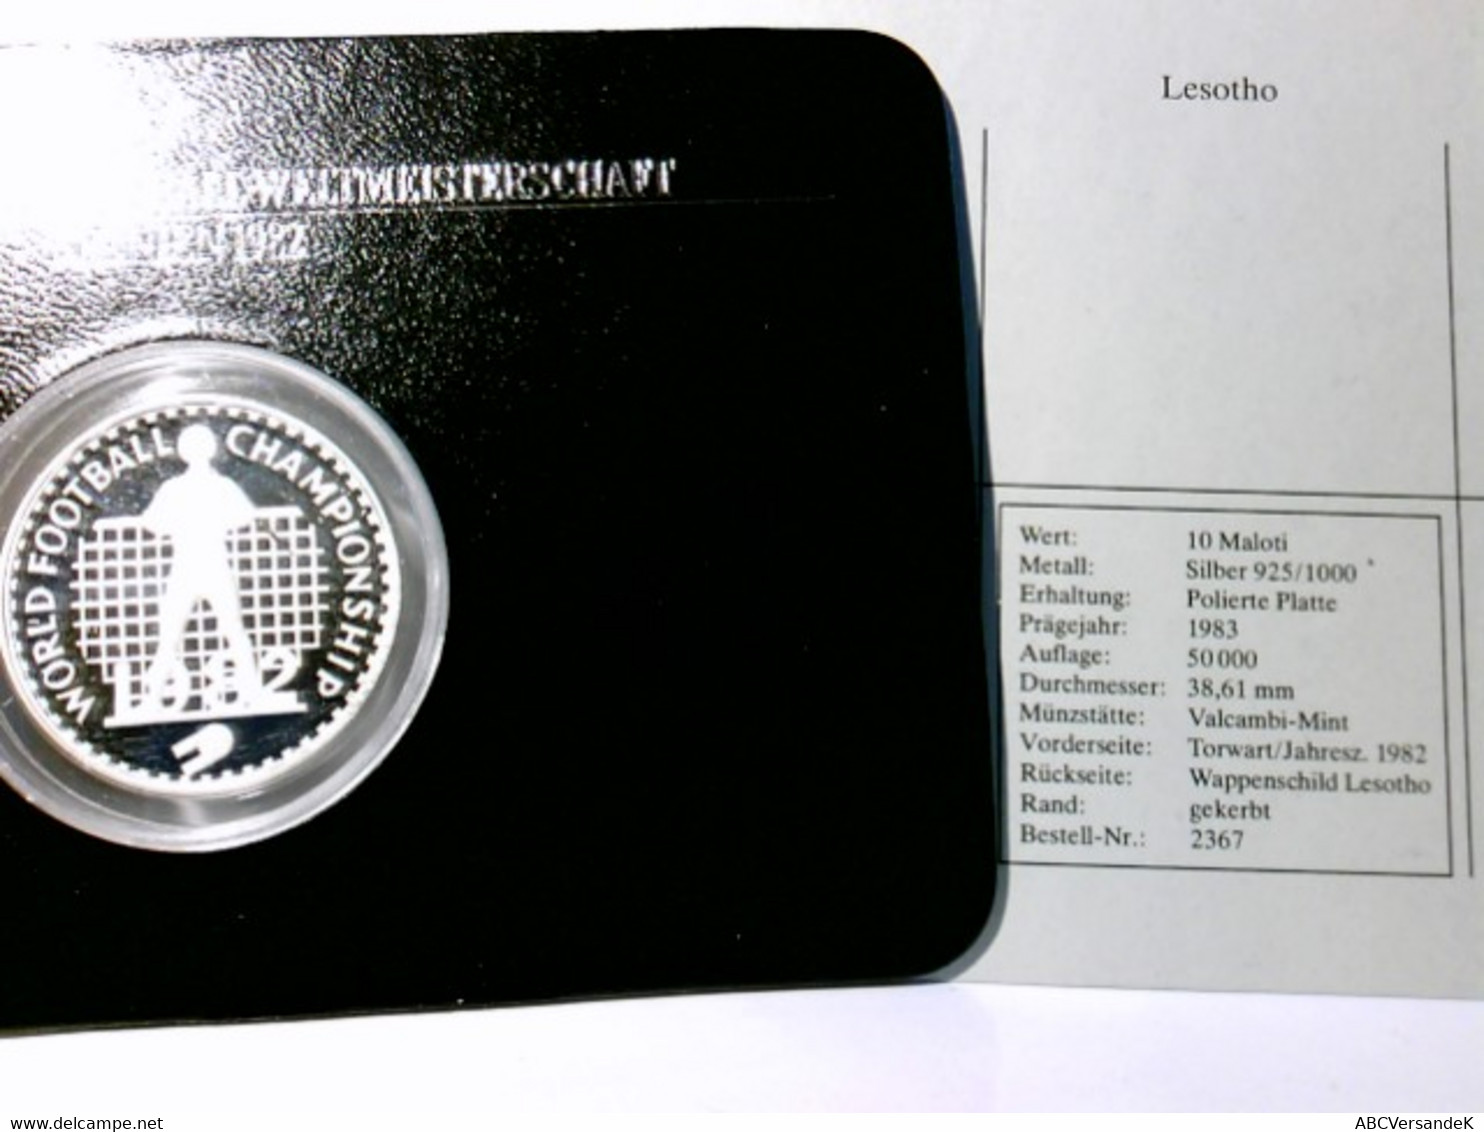 Münzen/ Medaillen, 10 Maloti, 1983, Lesotho, Fussball Weltmeisterschaft Spanien 1982, Polierte Platte. - Numismatics